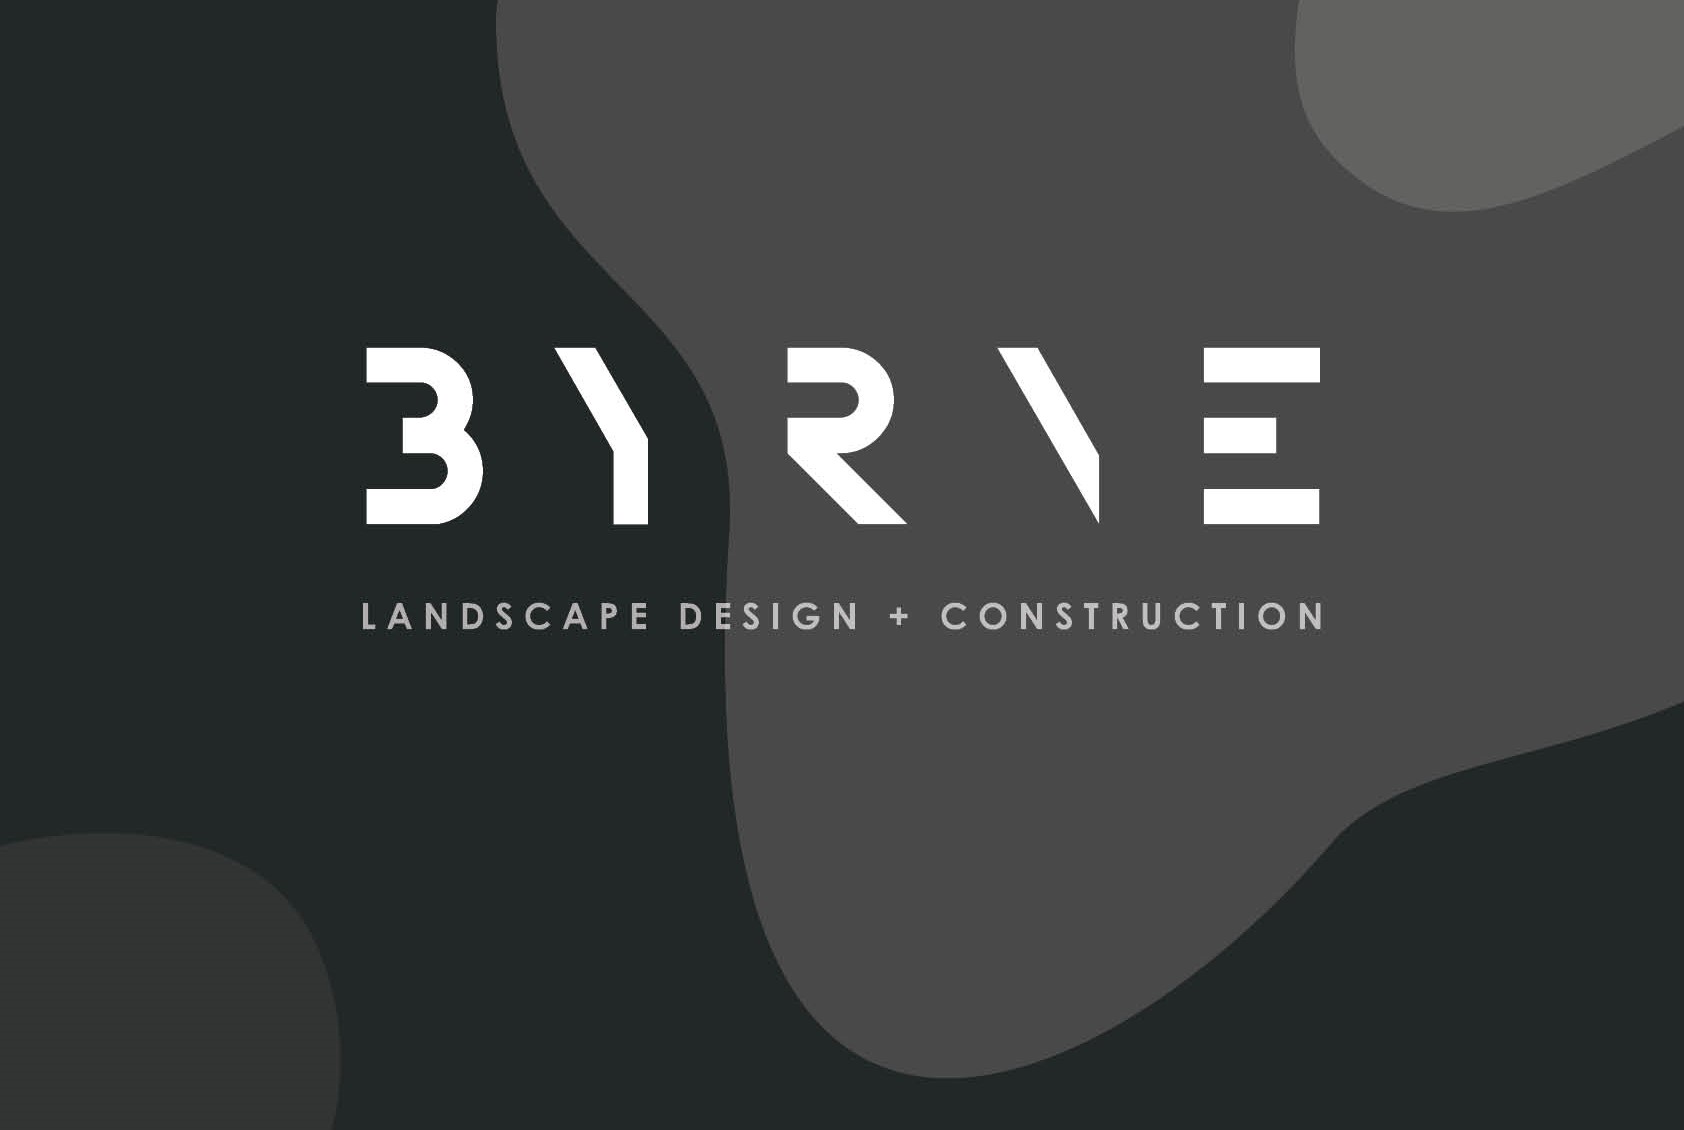 Byrne Landscape Design and Construction